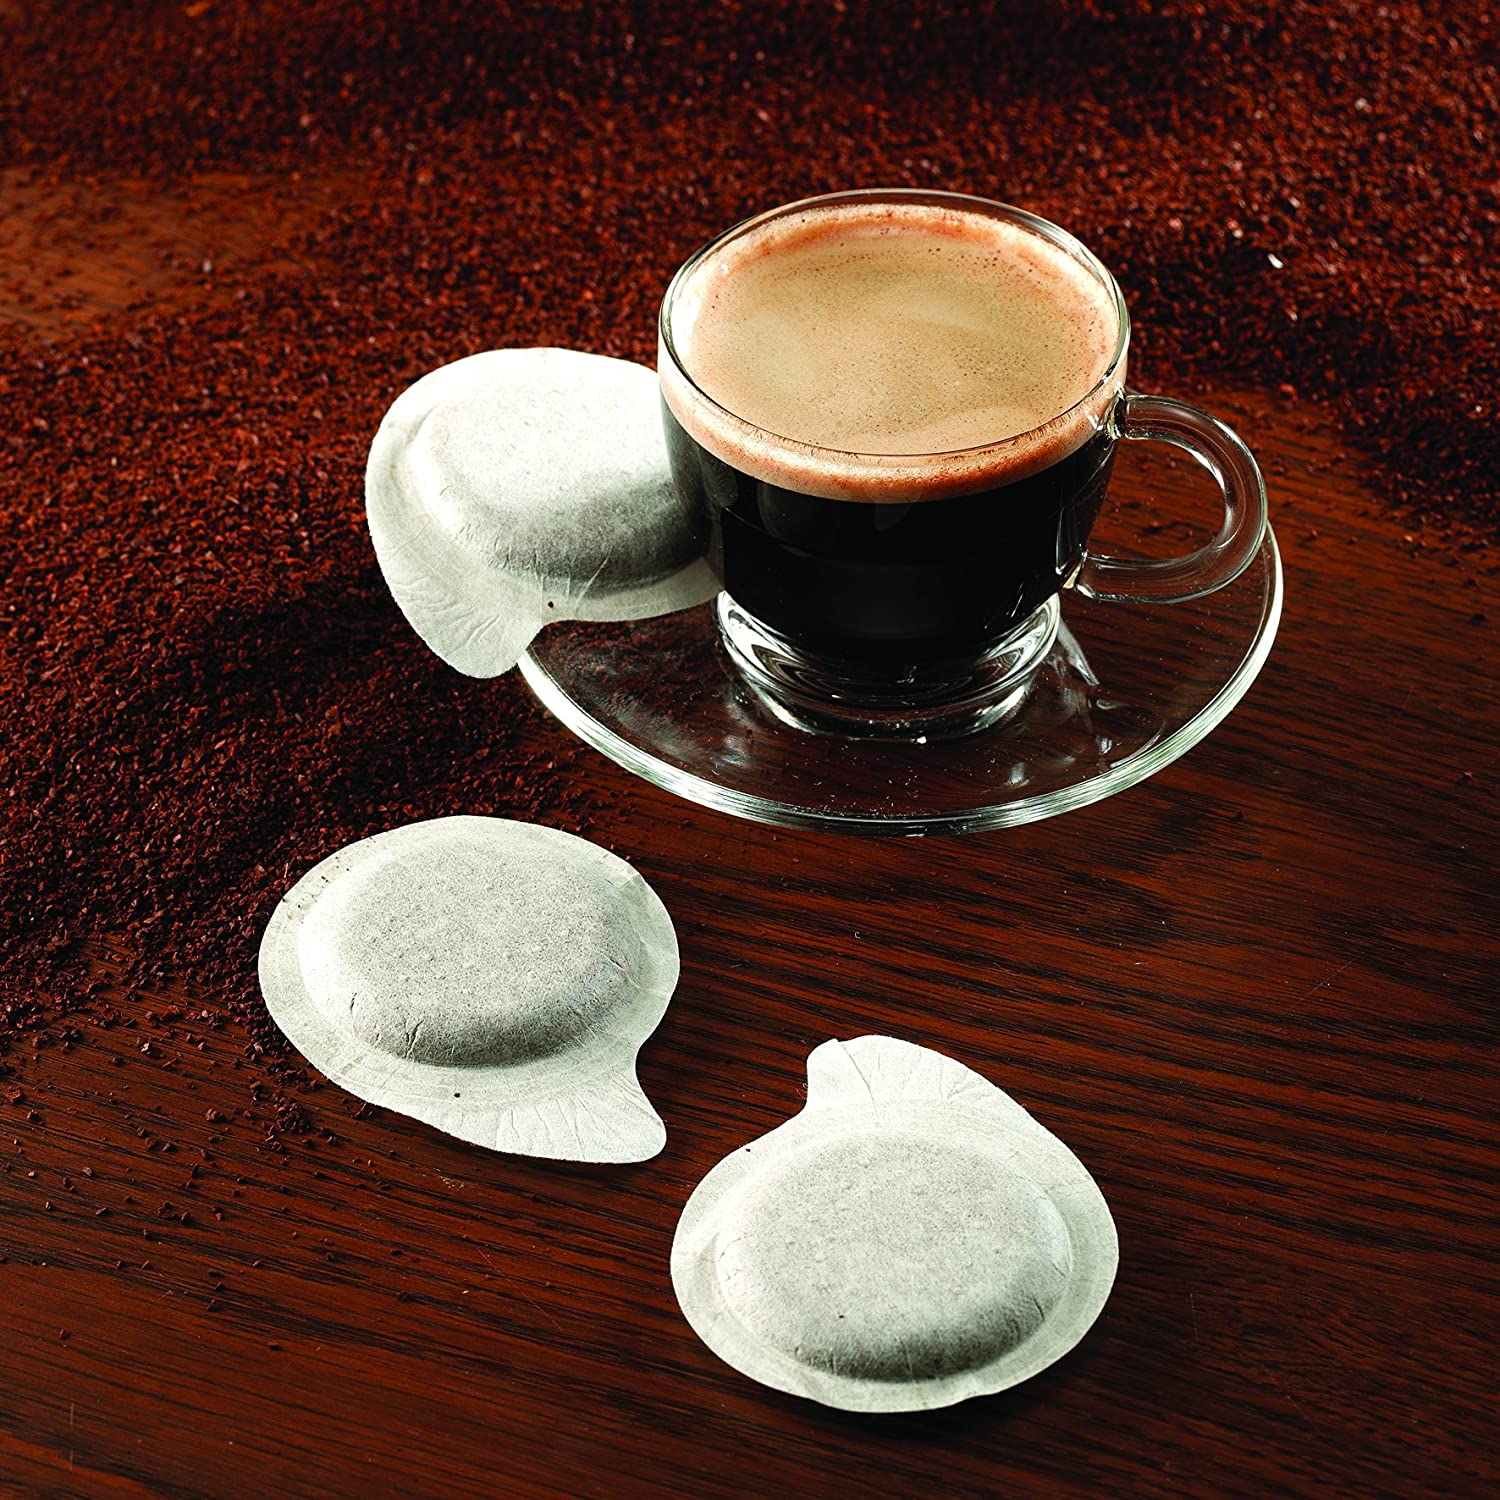 قهوه ساز مورفی ریچاردز مدل Morphy Richards 172005 240V 100W Accents Coffee Maker - ارسال 10 الی 15 روز کاری